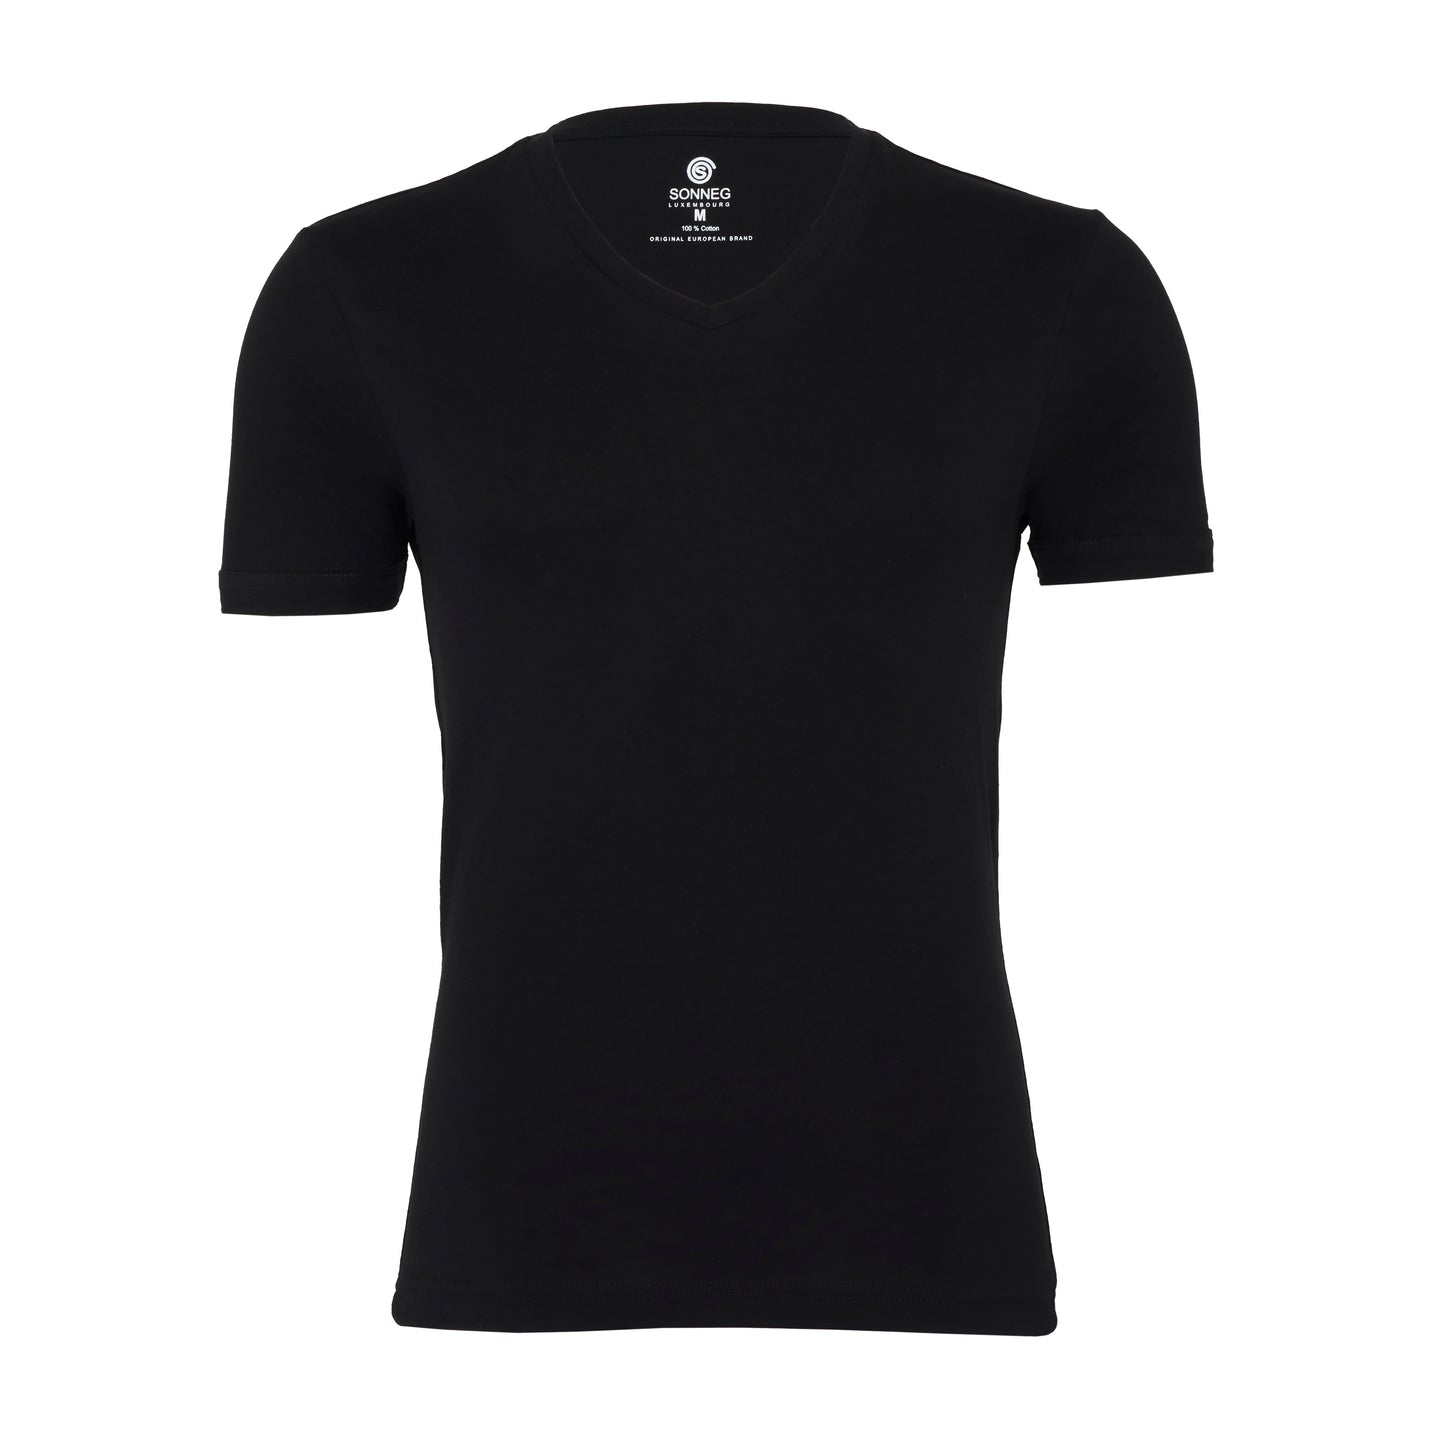 V-neck deep, black, bodyfit T-shirt – pack of 2 or 4 tees